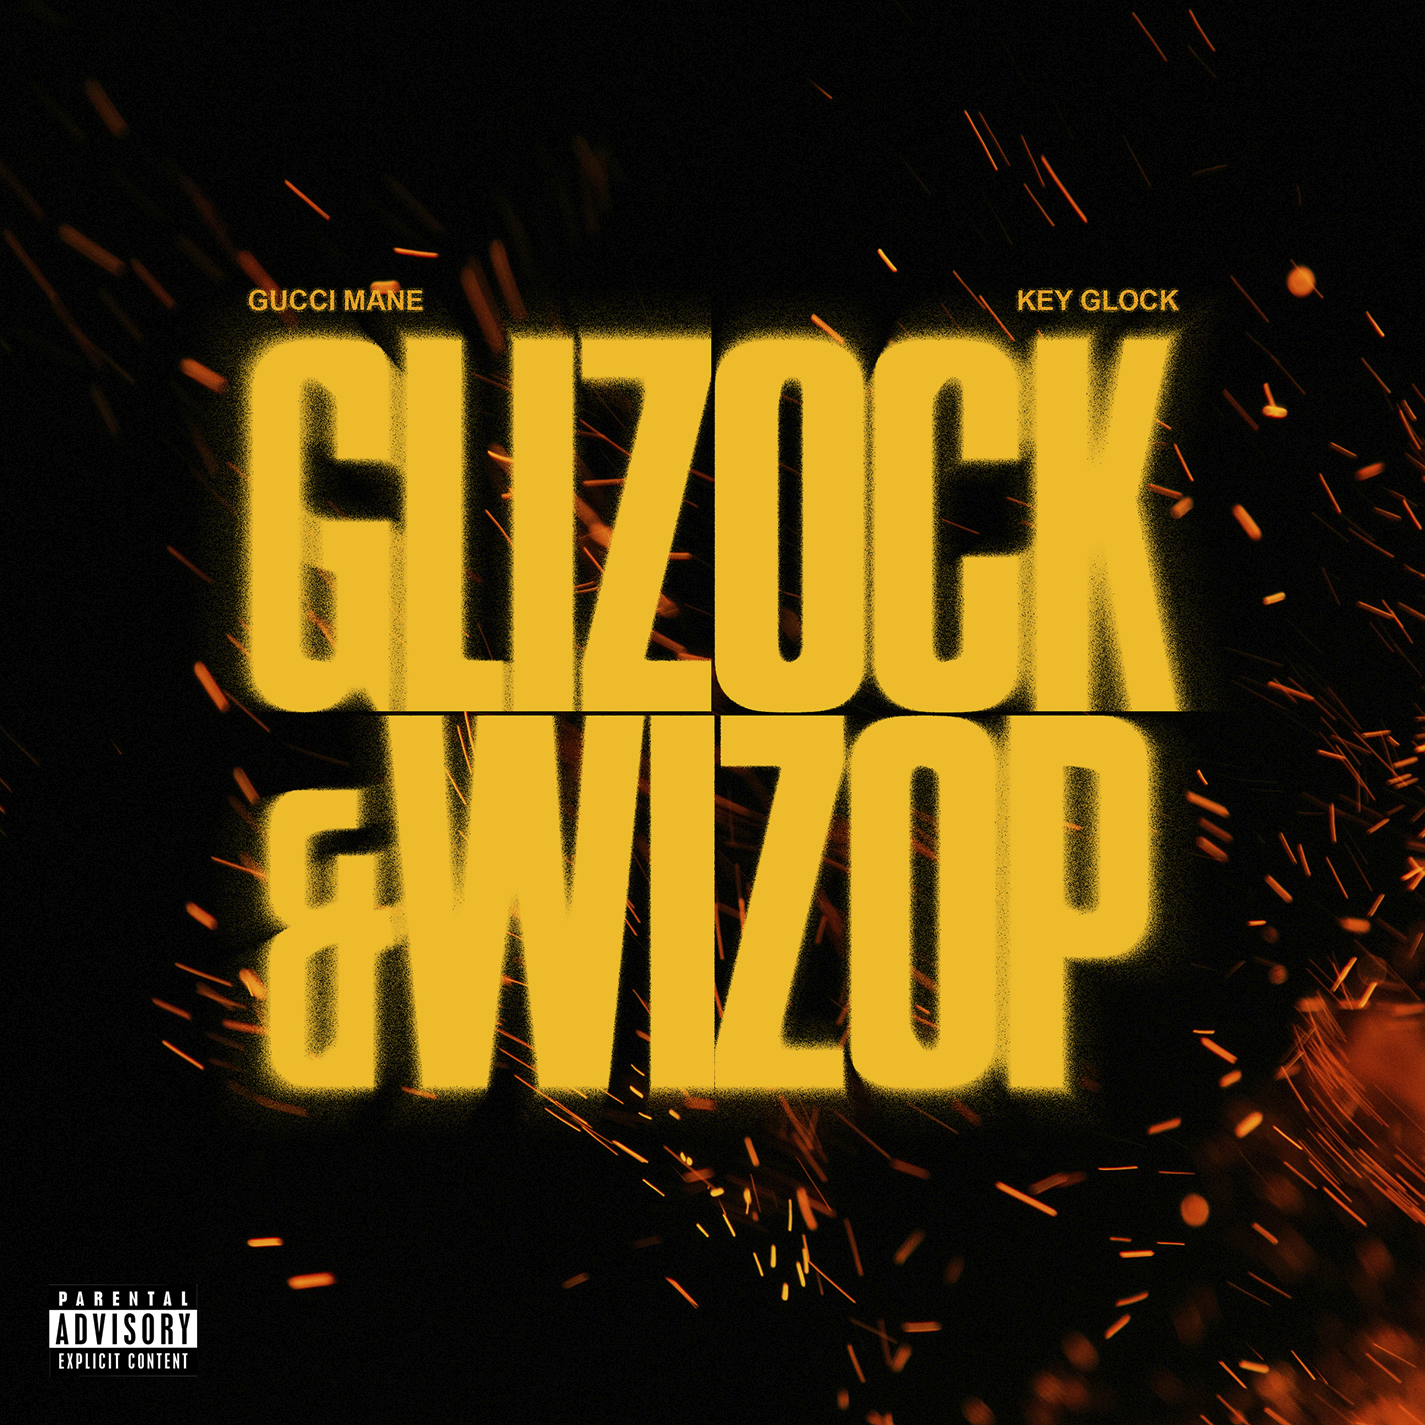 Glizock & Wizop